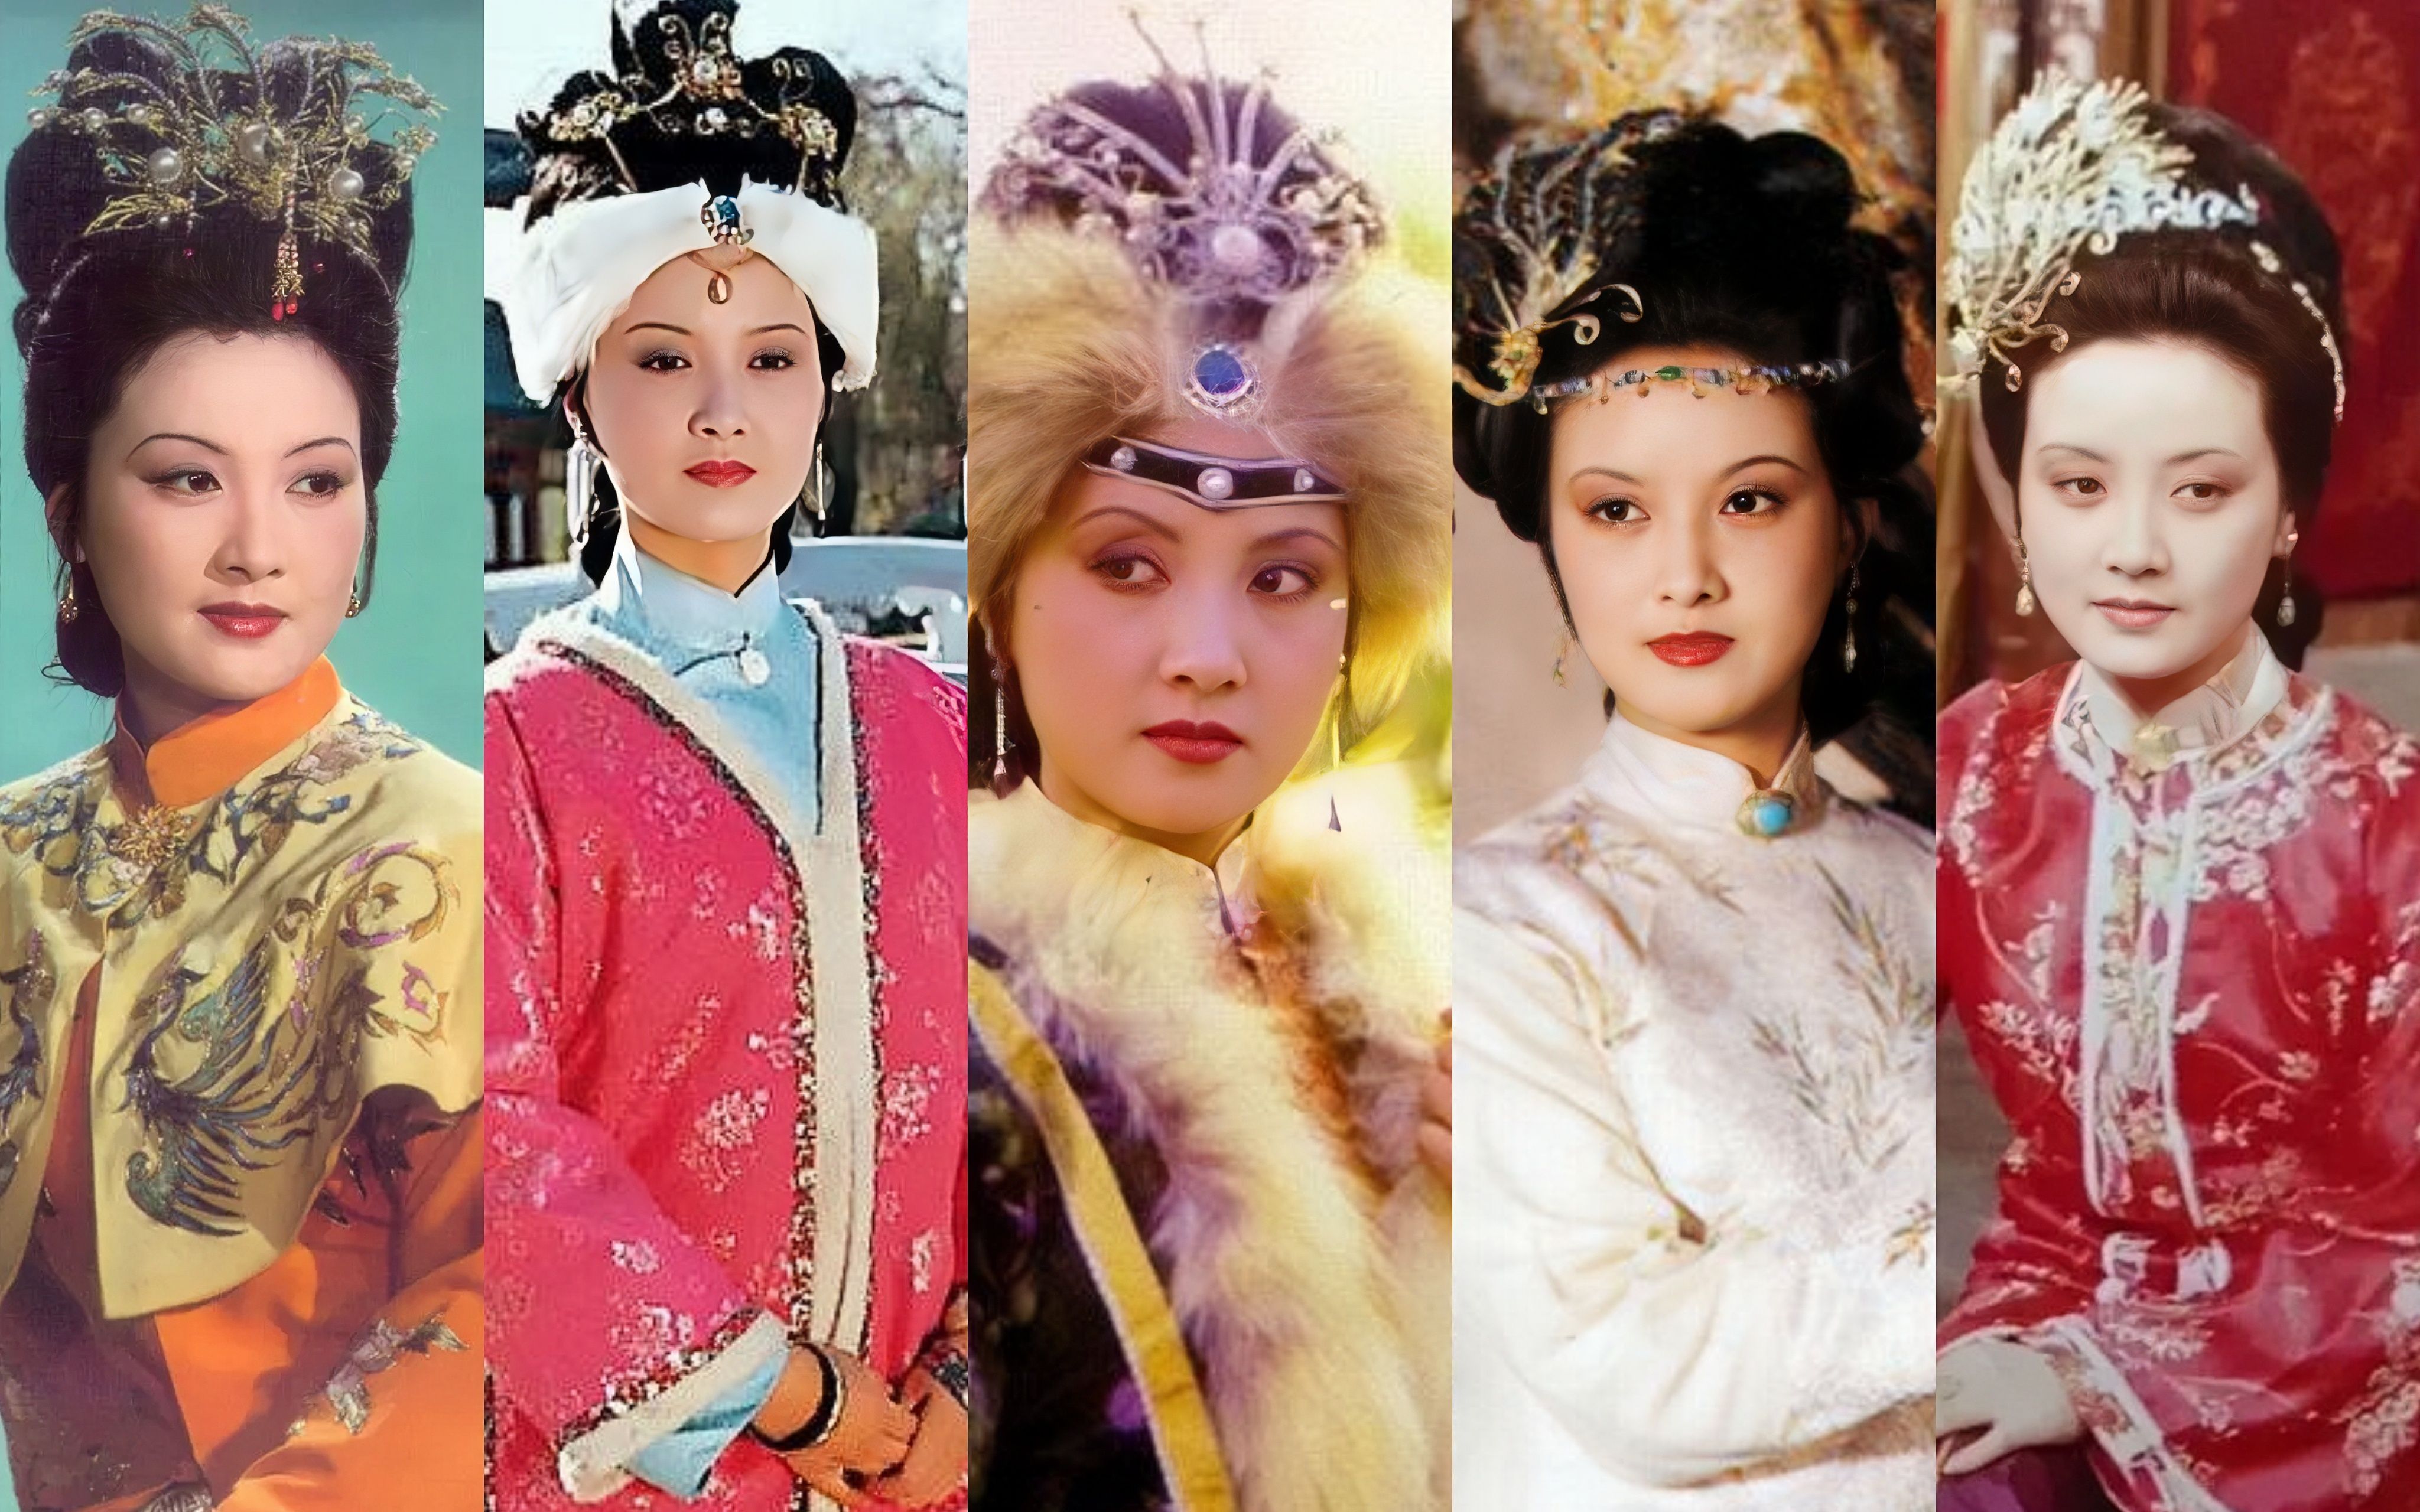 87版红楼梦中王熙凤的服装介绍(上),她的每一次出场都赚足了回头率